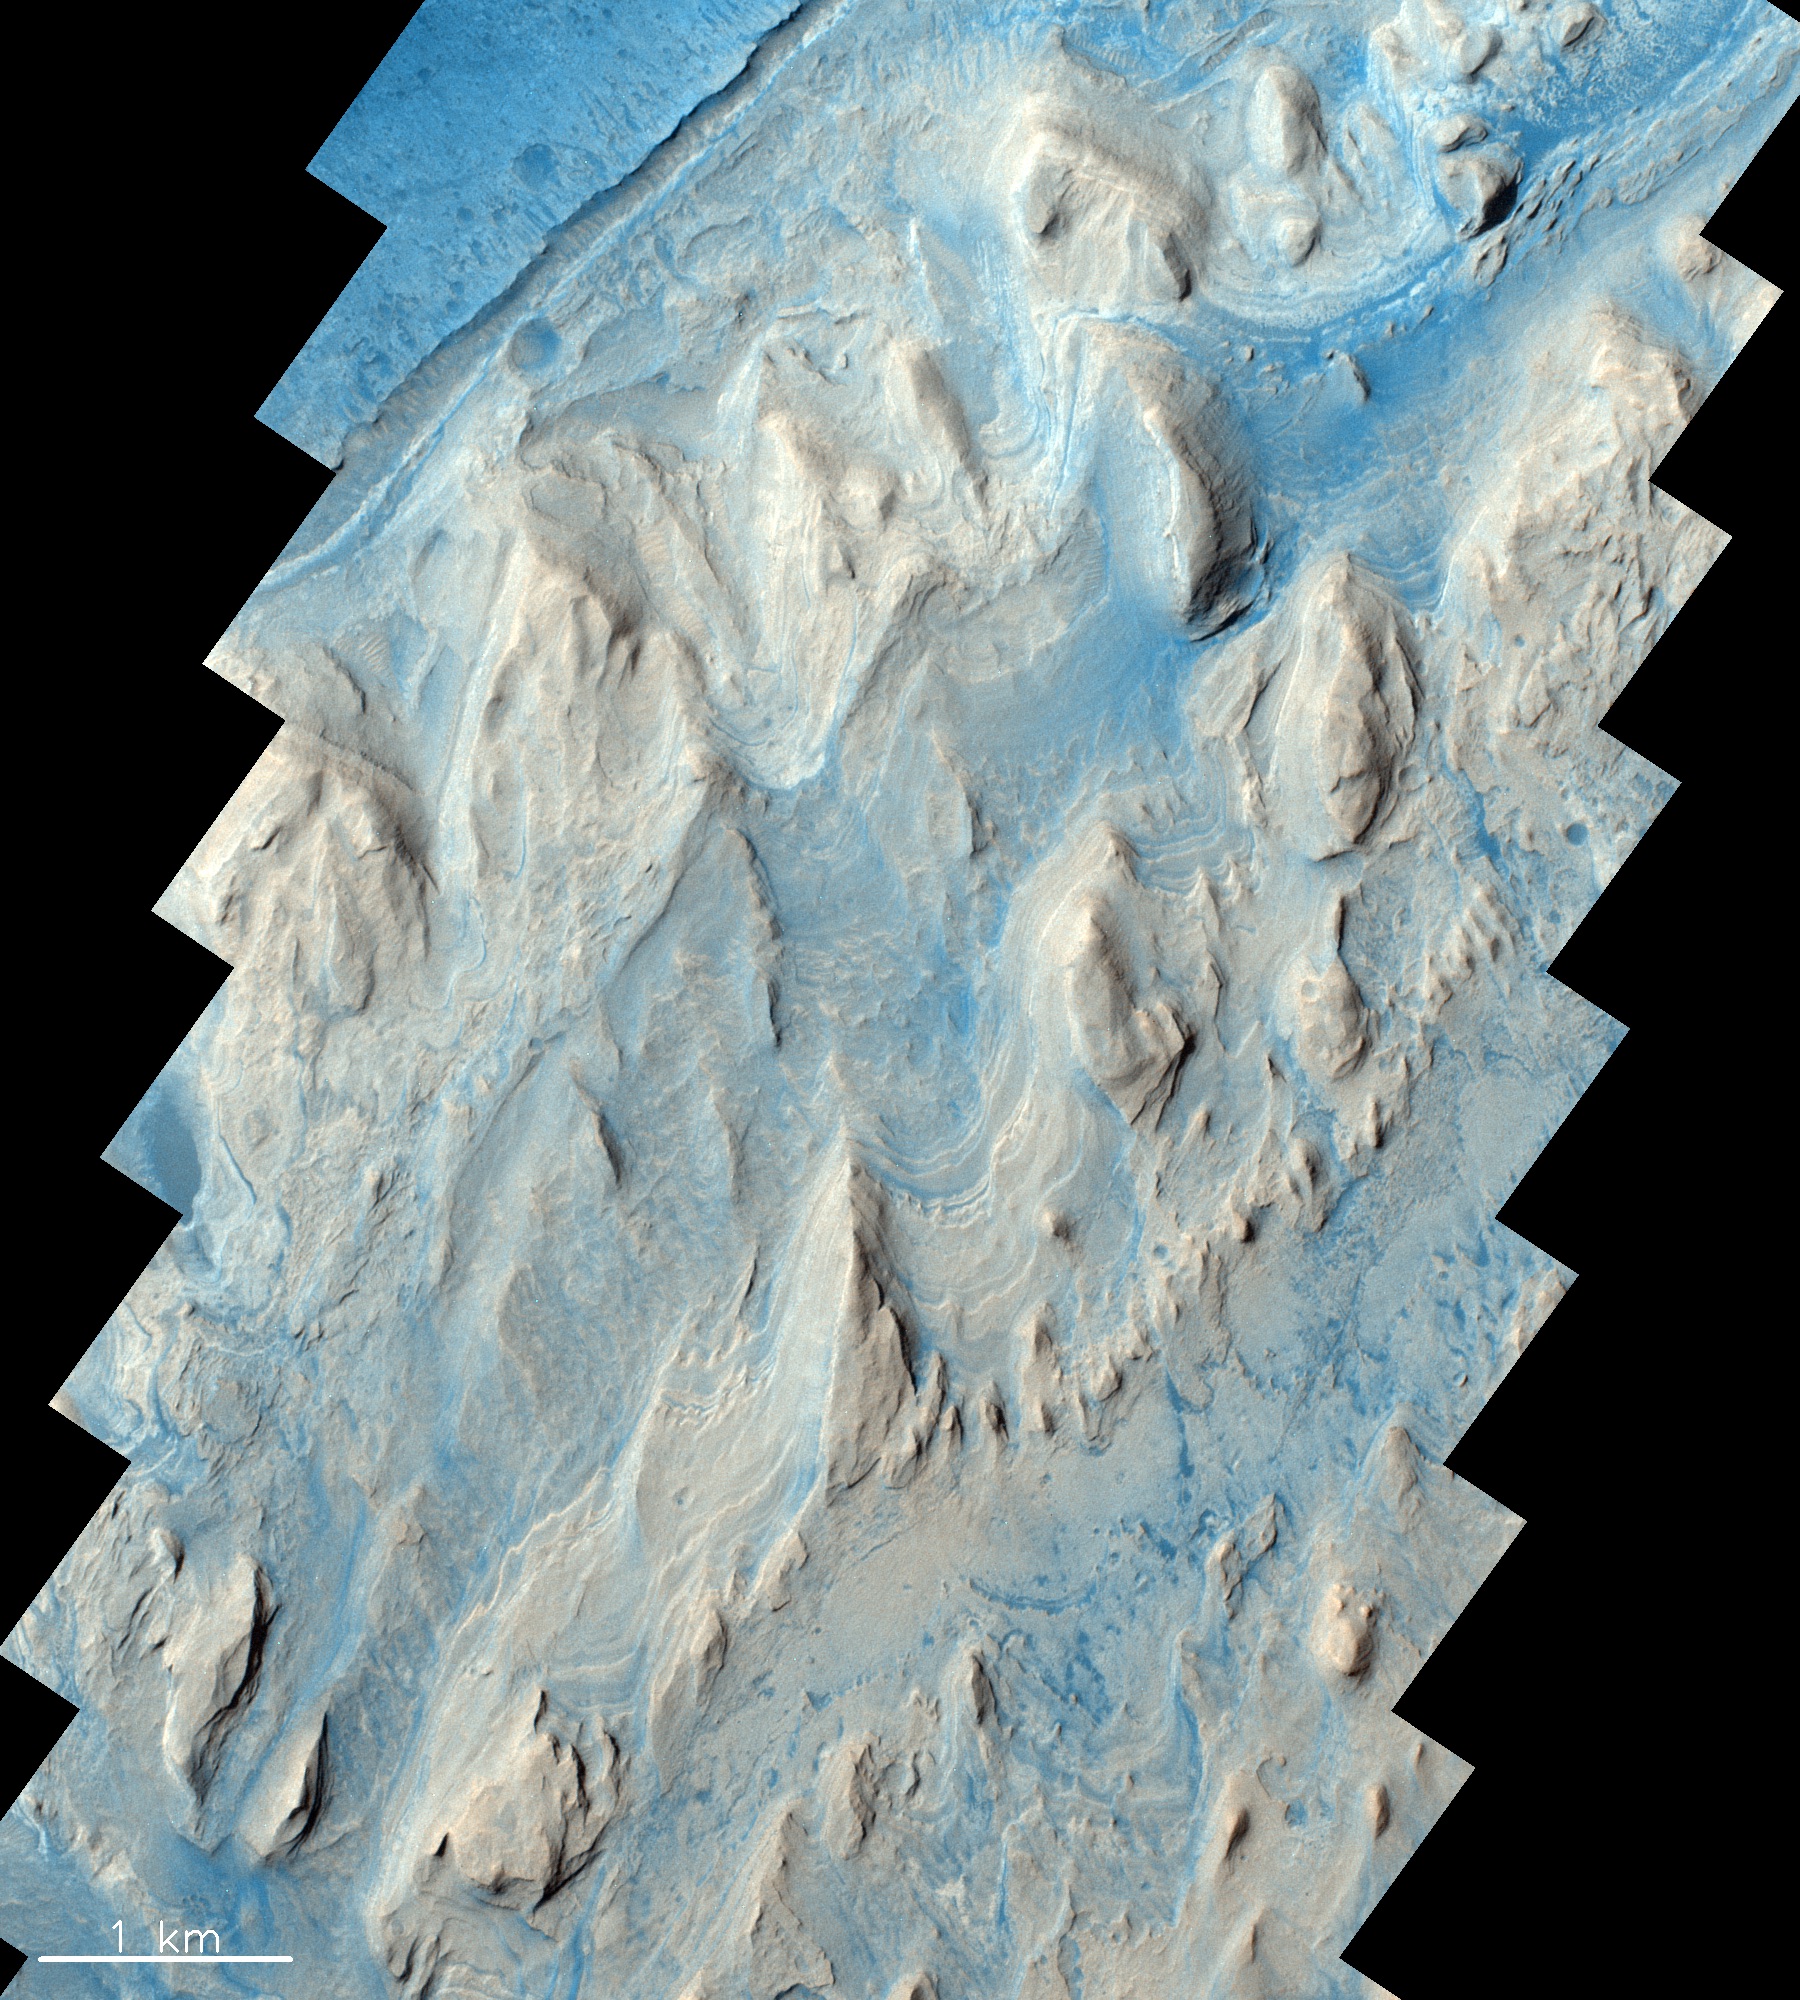 Der Gale Crater, heute der Standort des Curiosity Rovers der NASA, hat einen Durchmesser von ca. 150 km und liegt nahe der Grenze zwischen dem südlichen Hochland und dem nördlichen Tiefland des Mars. Im Krater befindet sich ein massiver zentraler Hügel, der kilometerdicke, geschichtete Sedimentgesteine enthält. Diese sind Indikatoren dafür, dass sich das Klima auf dem Mars entwickelt hat von feuchteren Bedingungen, unter denen sich wasserführende Mineralien bildeten, zu den heute beobachteten trockeneren Klimabedingungen.  © ESA/Roscosmos/CaSSIS, CC BY-SA 3.0 IGO